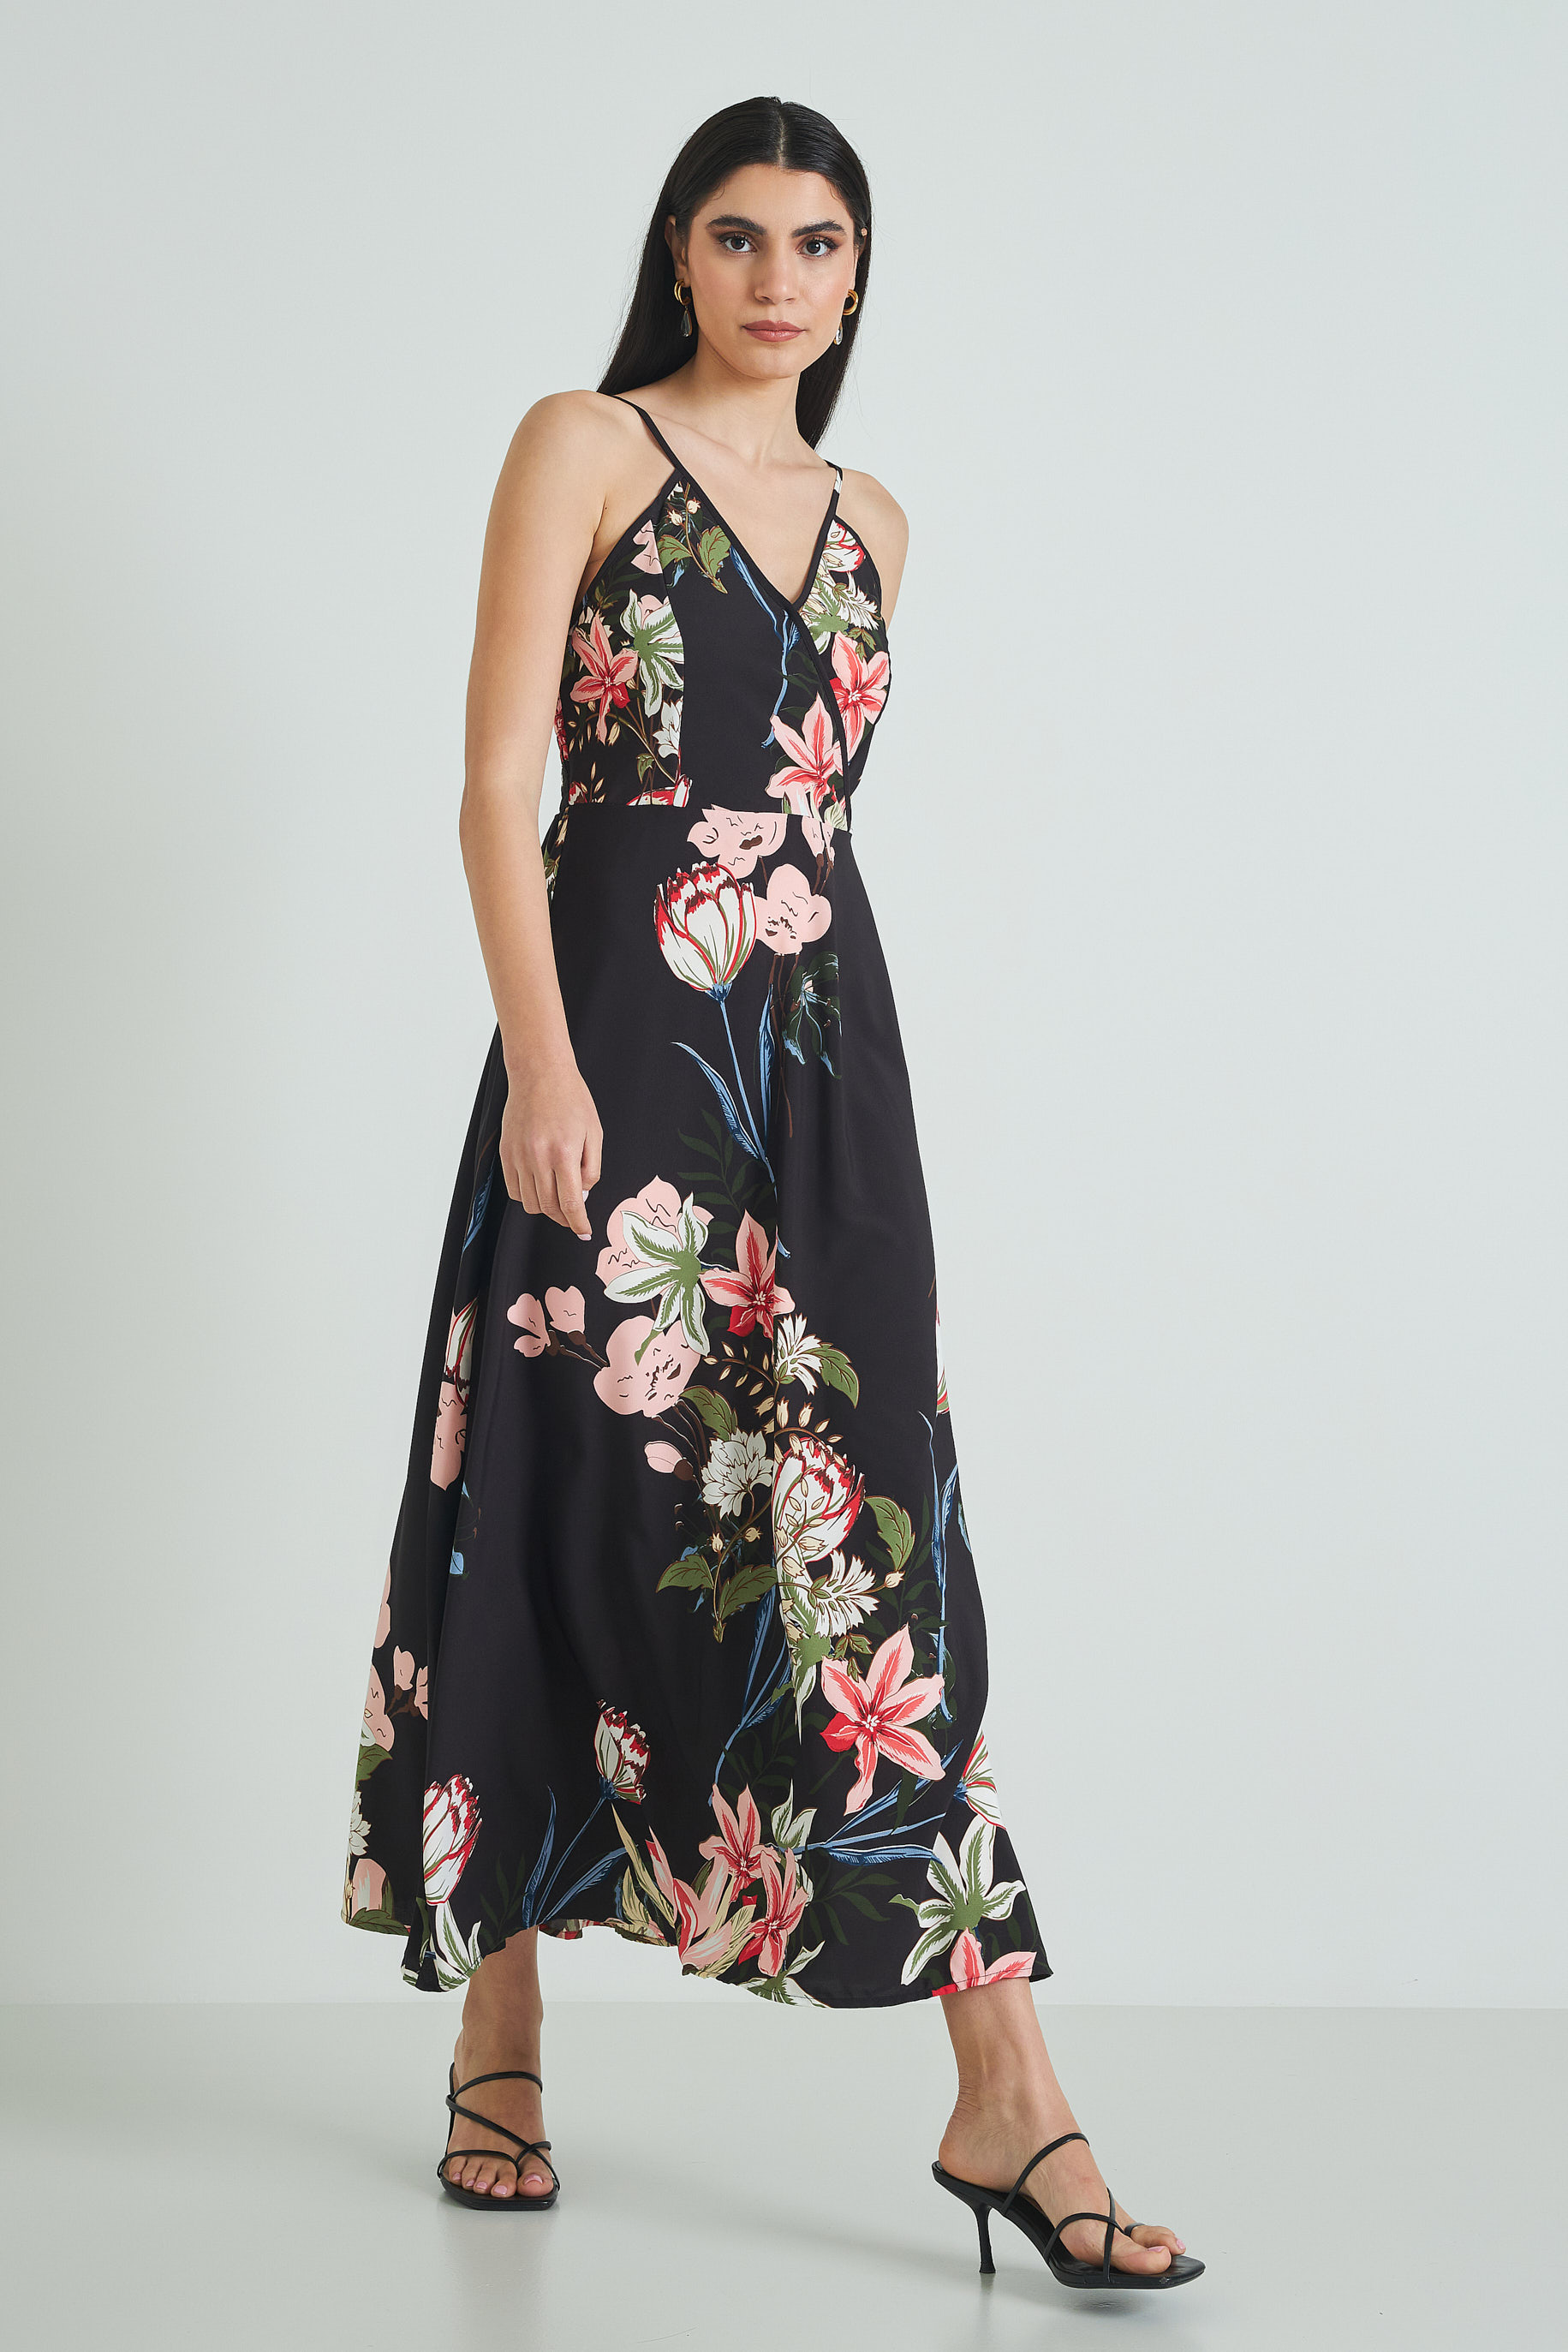 Εικόνα της Φόρεμα μακρύ floral